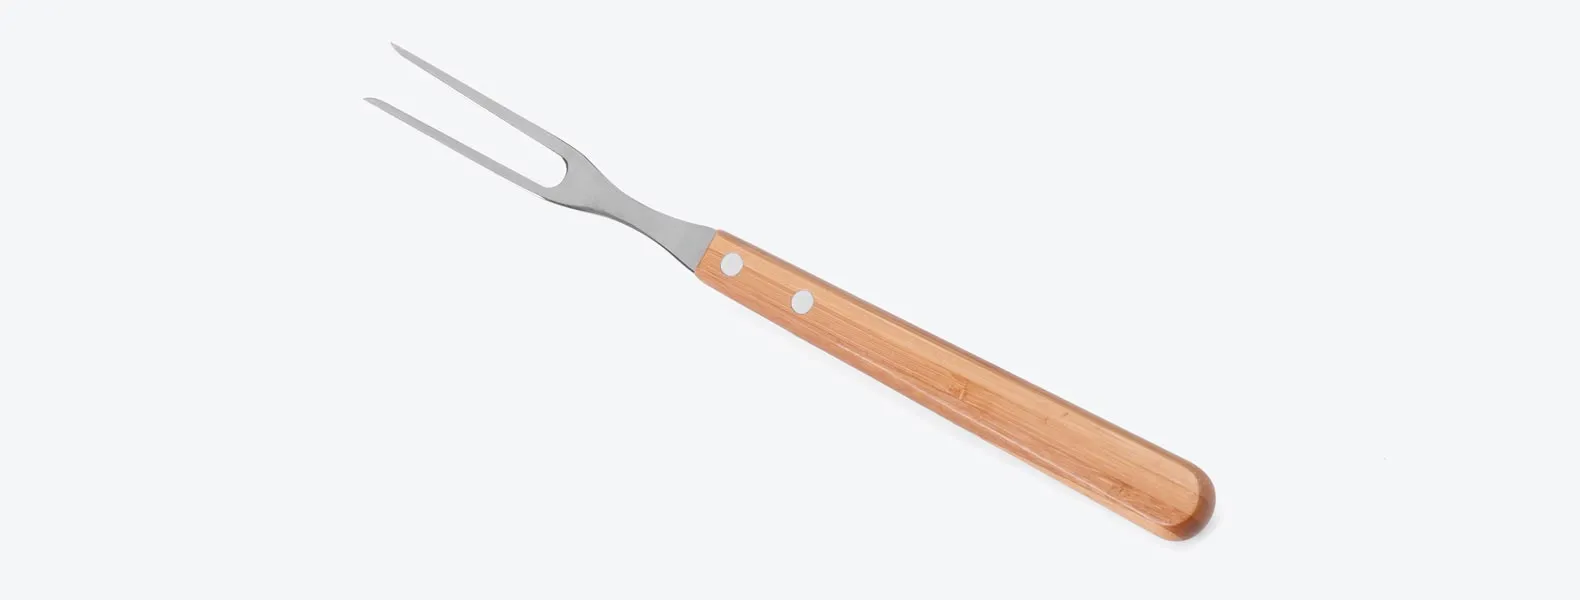 Conjunto com faca 7'', faca 4 para frutas e garfo em Bambu/Inox. Como cortesia, na faca 7 fazemos uma gravação com os cortes do boi.